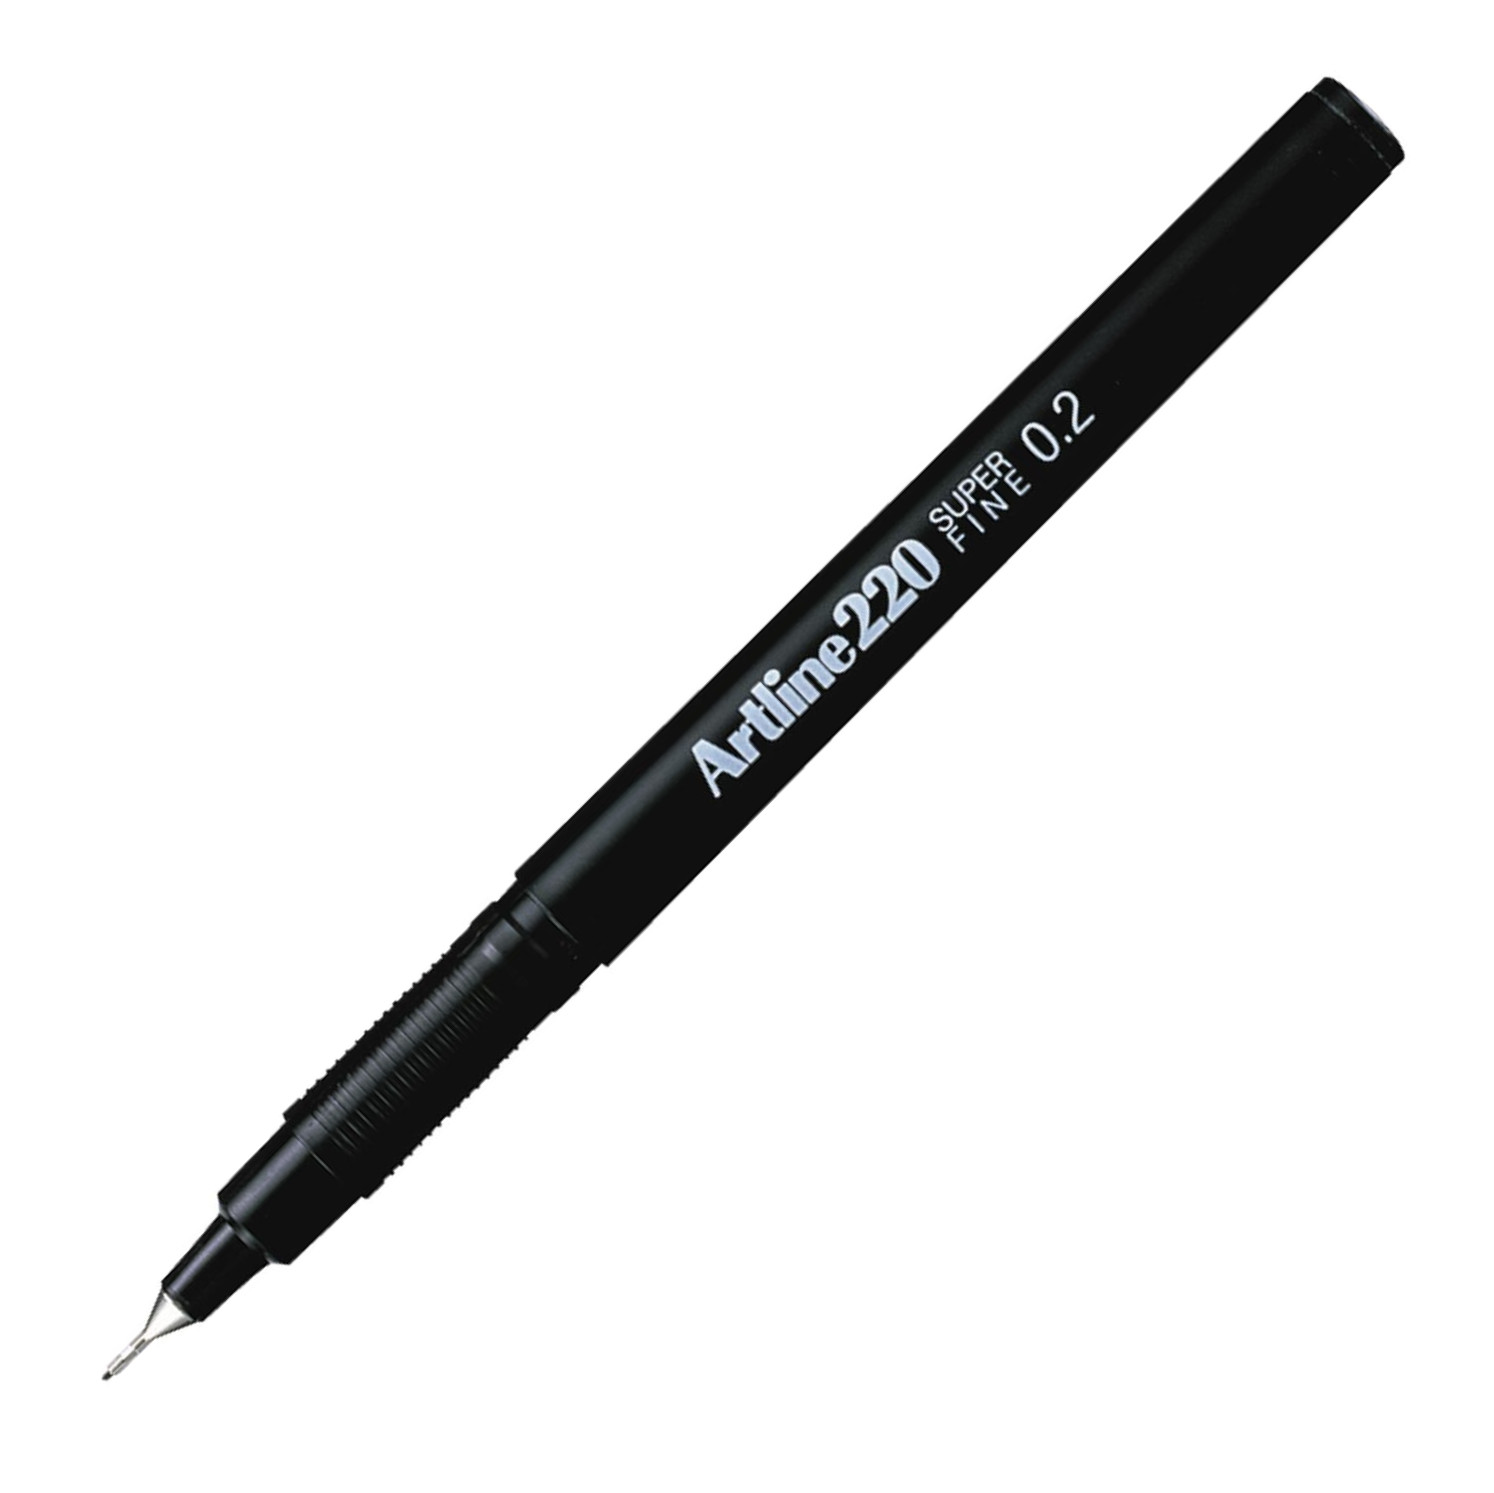  ручка Artline EK-220, тонкая, 0.2 мм